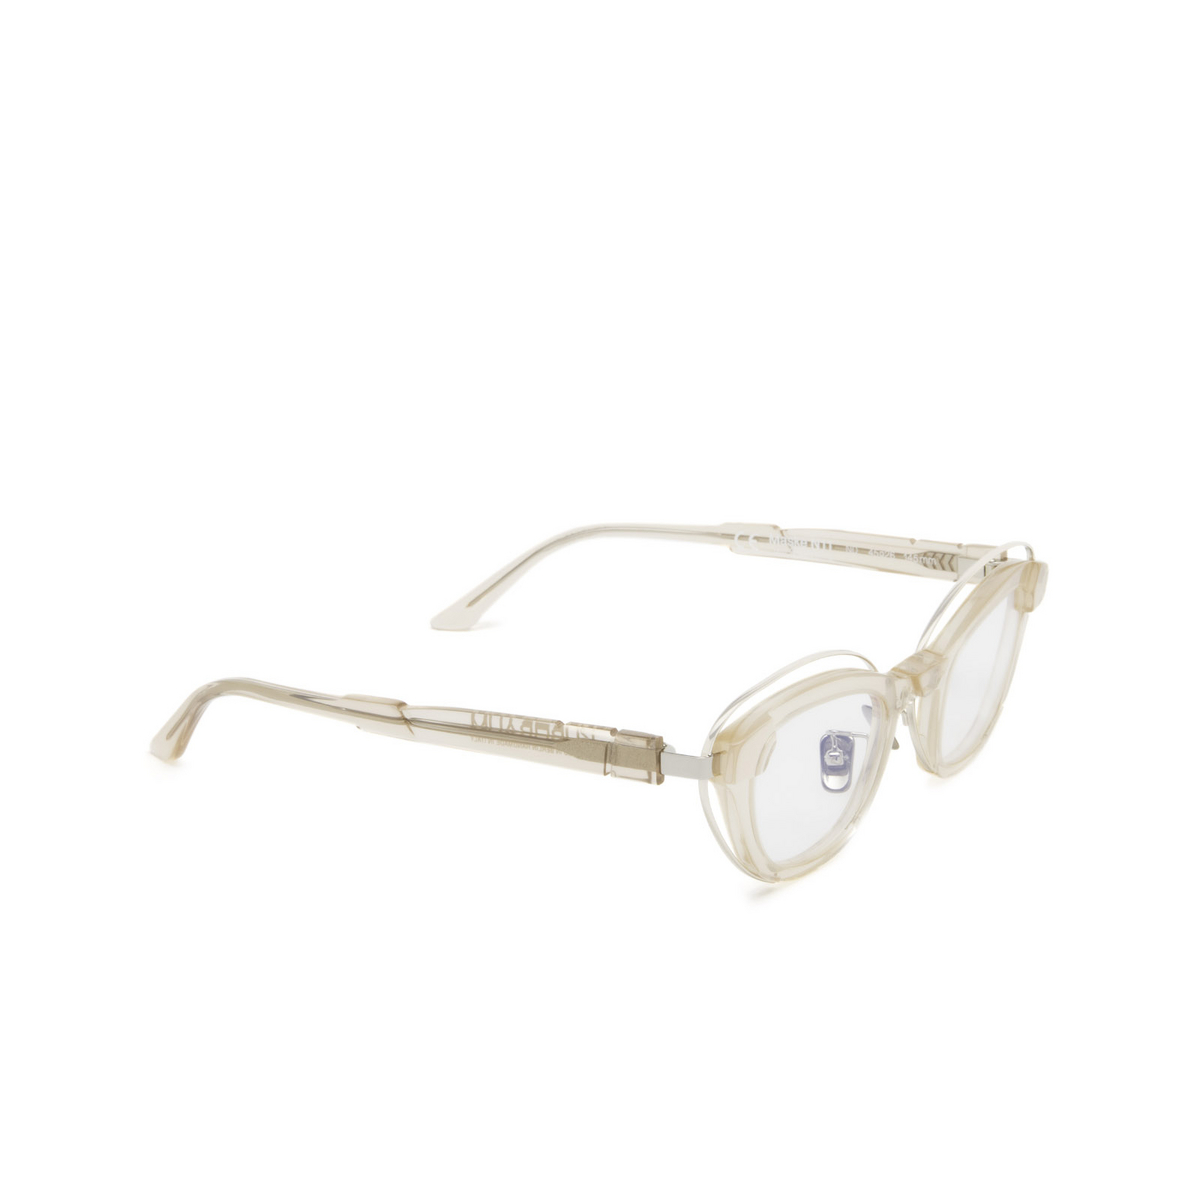 Kuboraum® Cat-eye Eyeglasses: N11 color Nude Nd - three-quarters view.